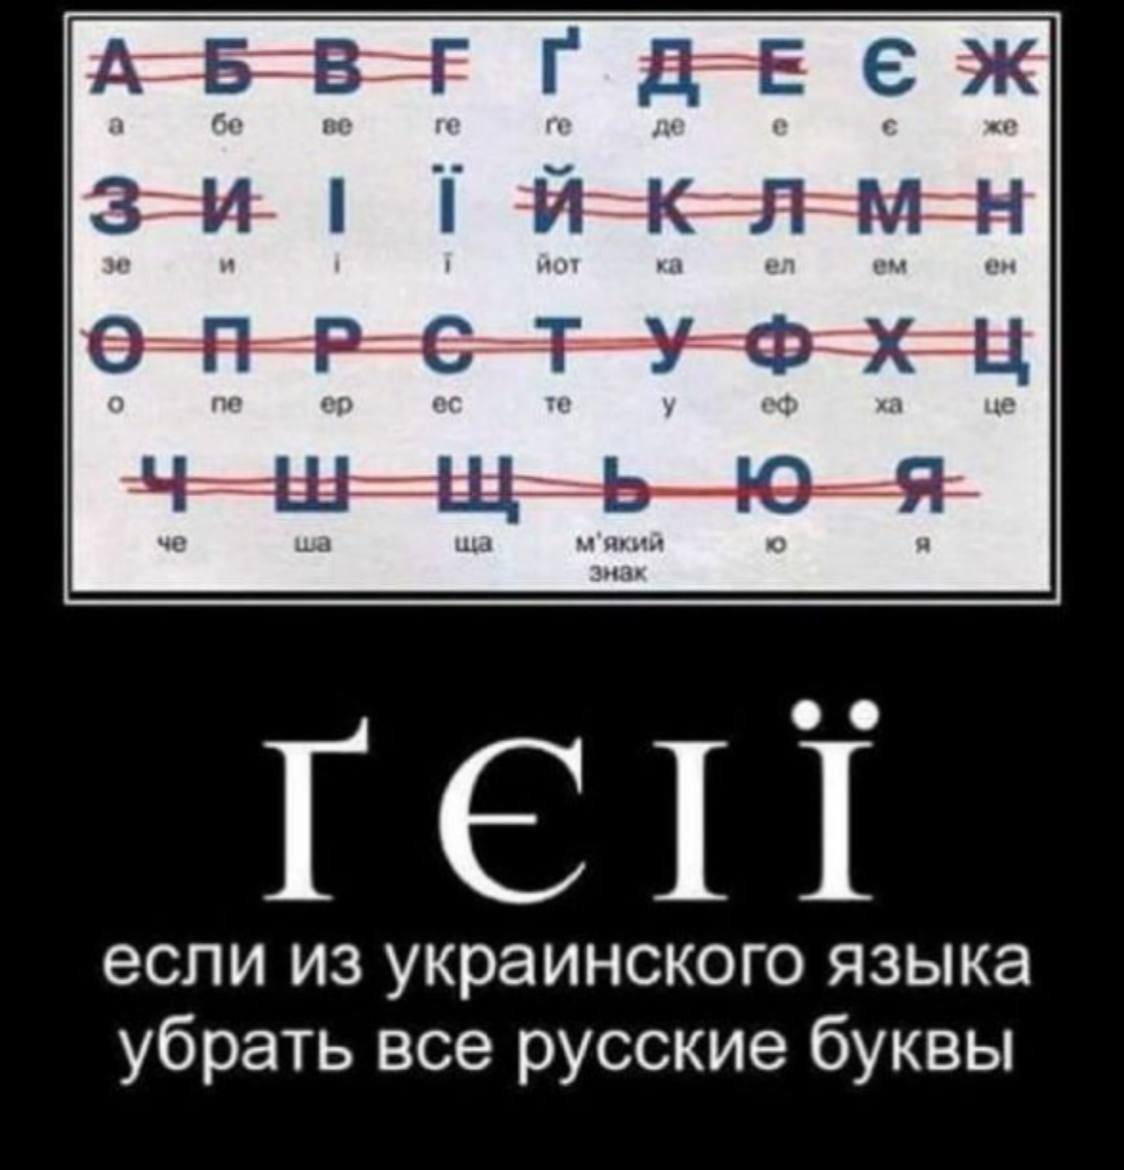 Ат5вг г даге 6 ж 344 ГС1Т если из украинского языка убрать все русские буквы